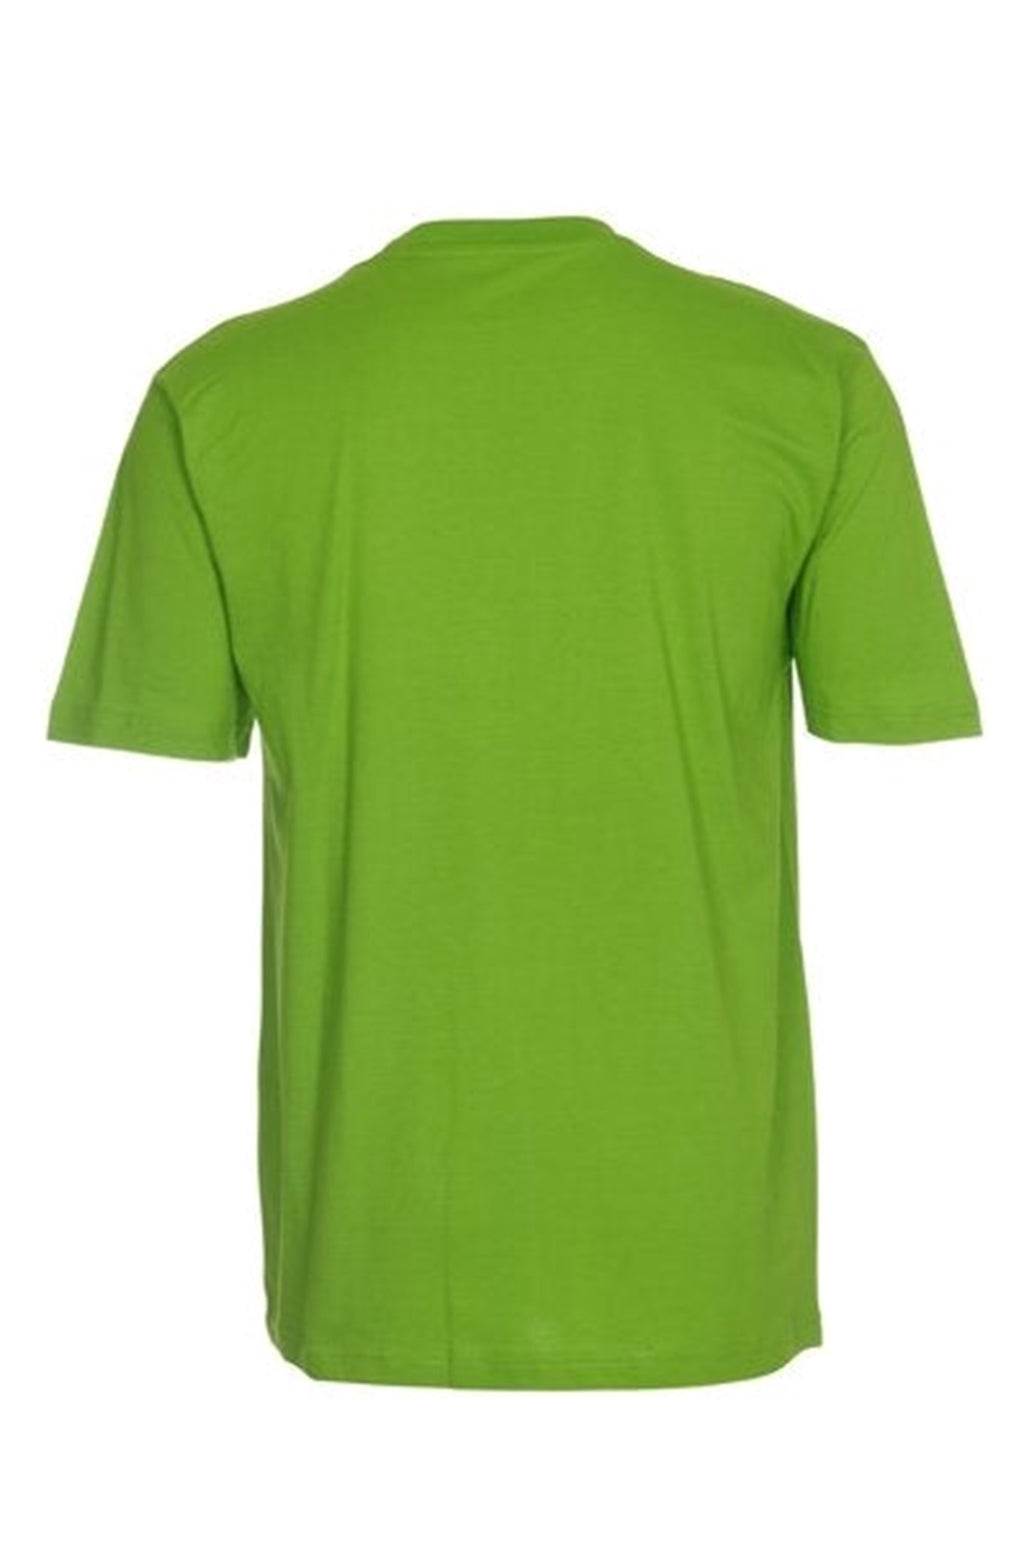 Oversized T-shirt - Lime Grønn